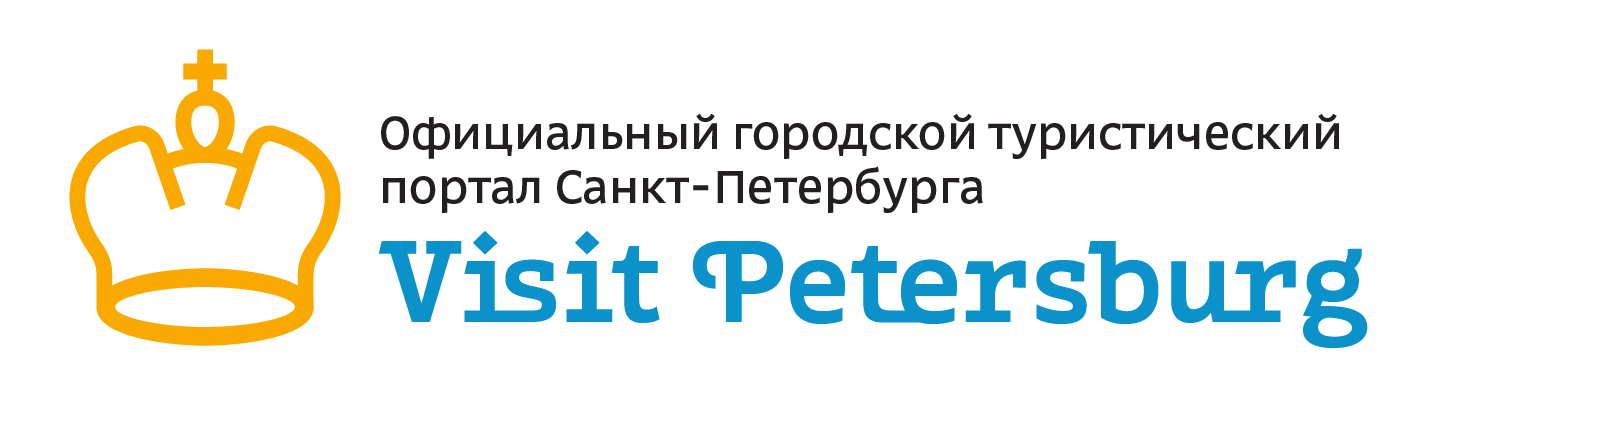 Visit Petersburg